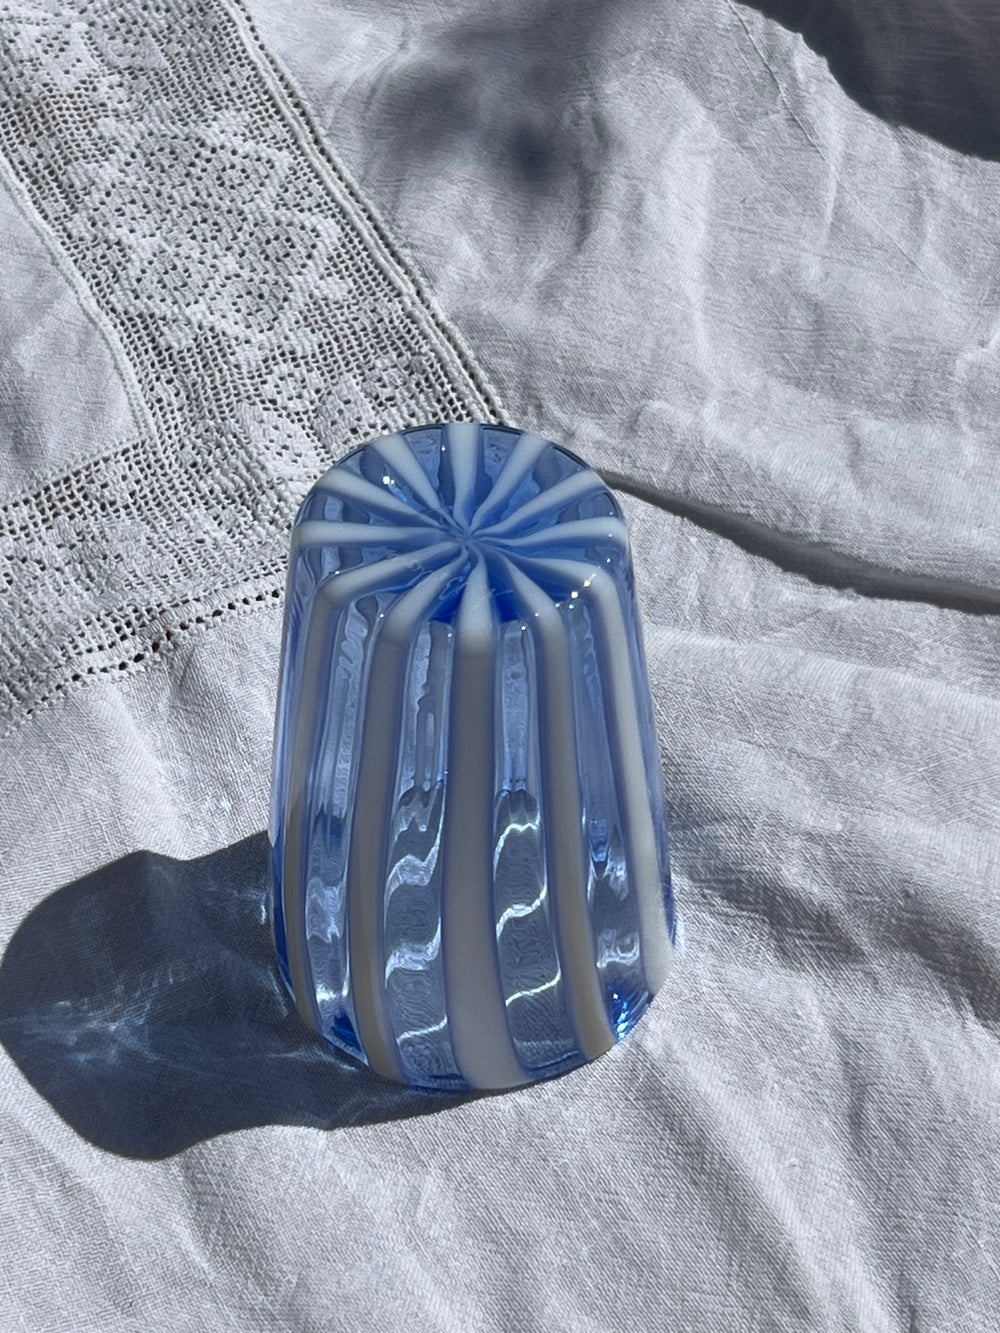 Håndblæst Murano Glas med Lyseblå og Hvide Striber Murano